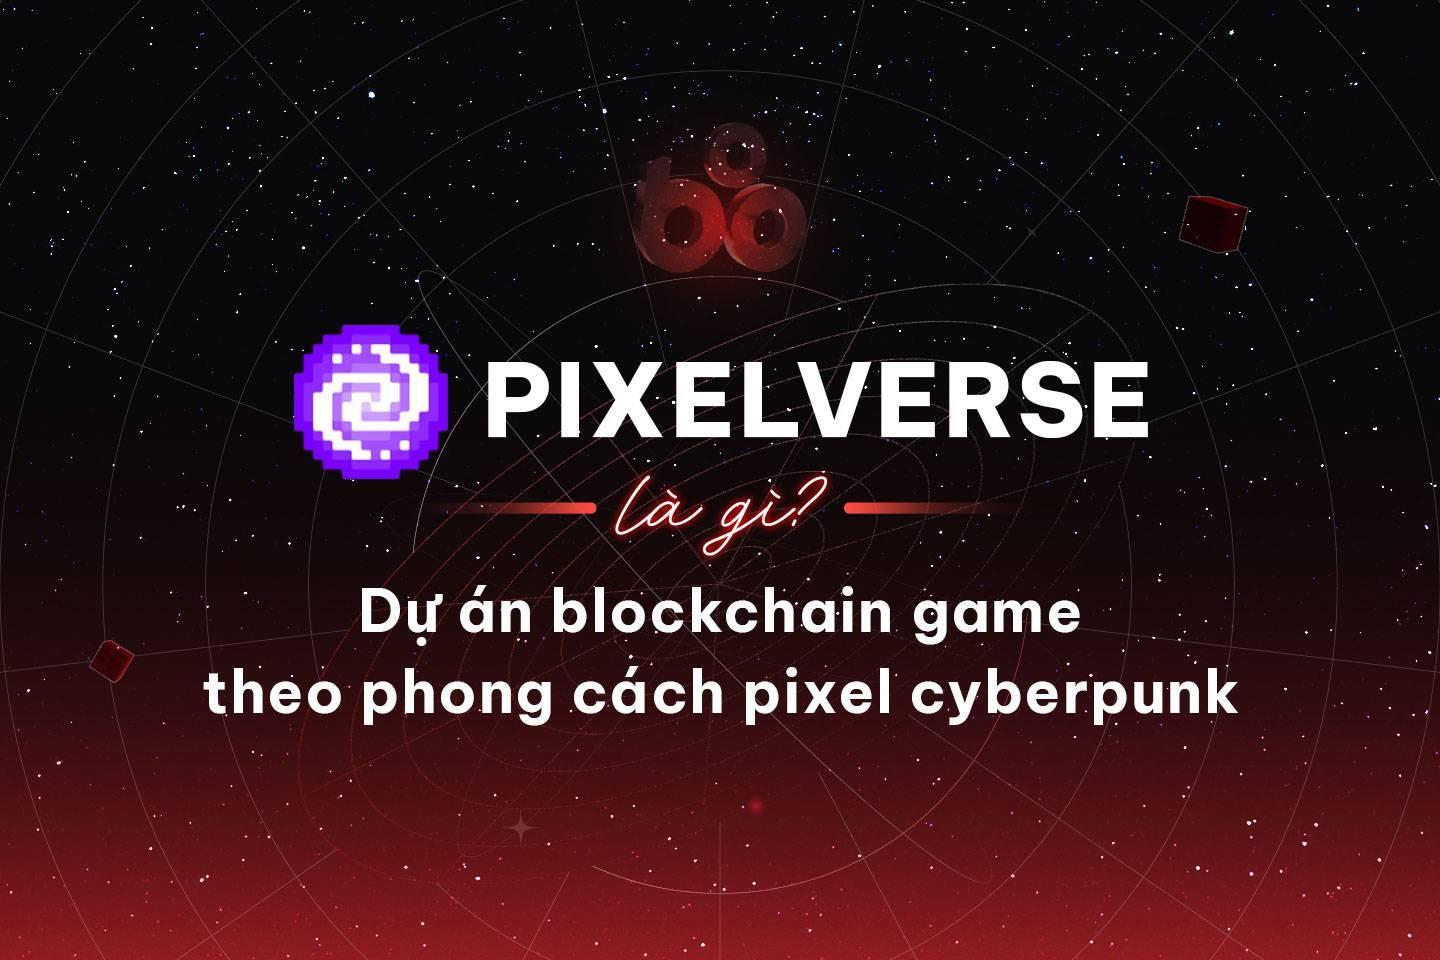 pixelverse-la-gi-du-an-blockchain-game-theo-phong-cach-pixel-cyberpunk